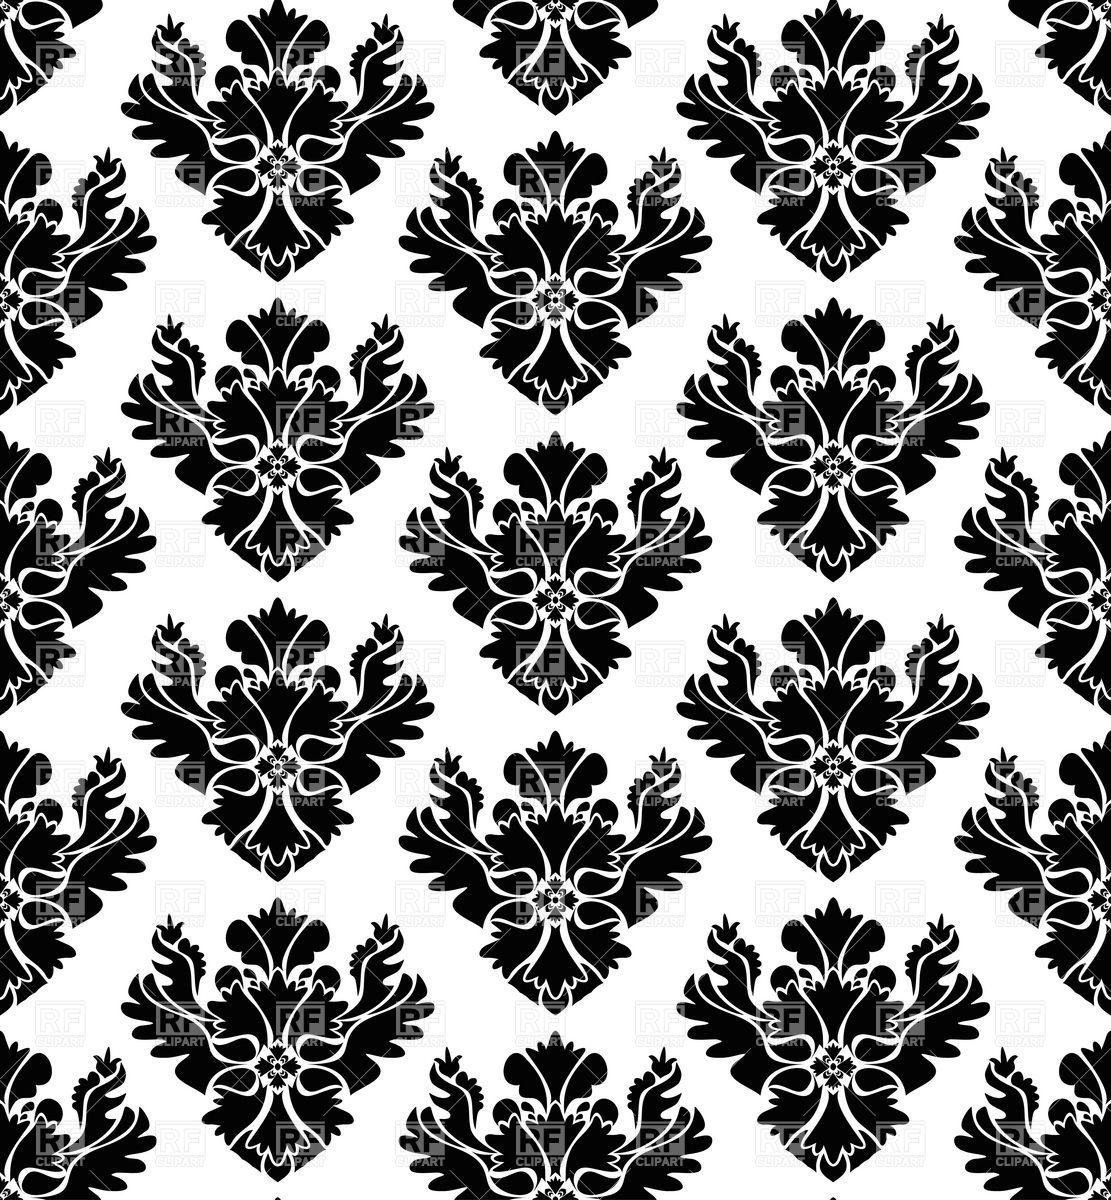 1111x1200 Hình nền gấm hoa trắng và đen liền mạch Kho ảnh vector